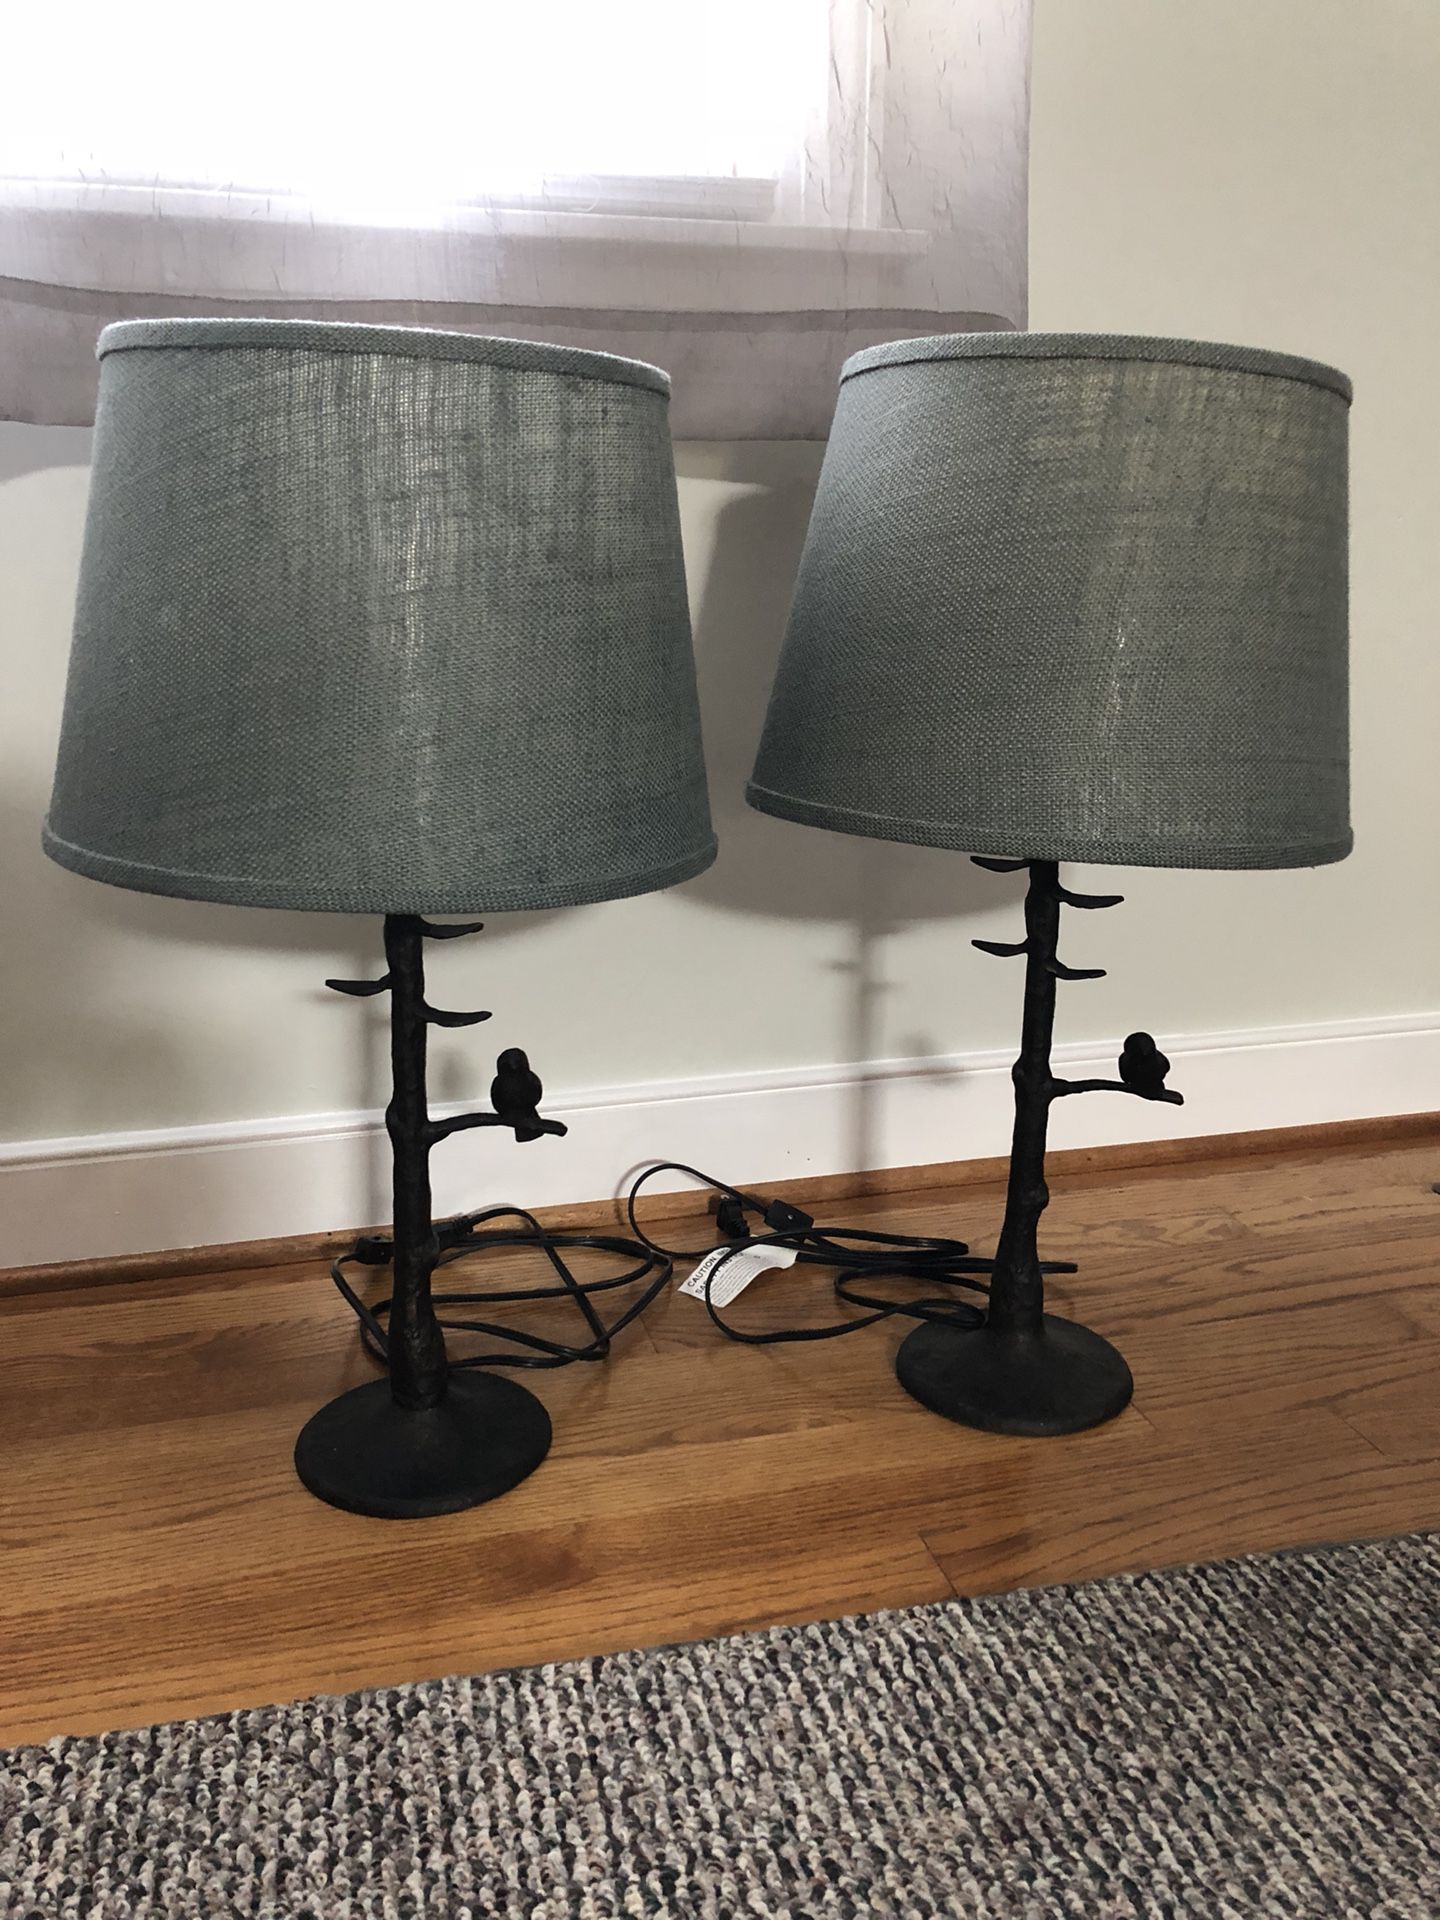 Lamp Base and Lamp Shade Pair